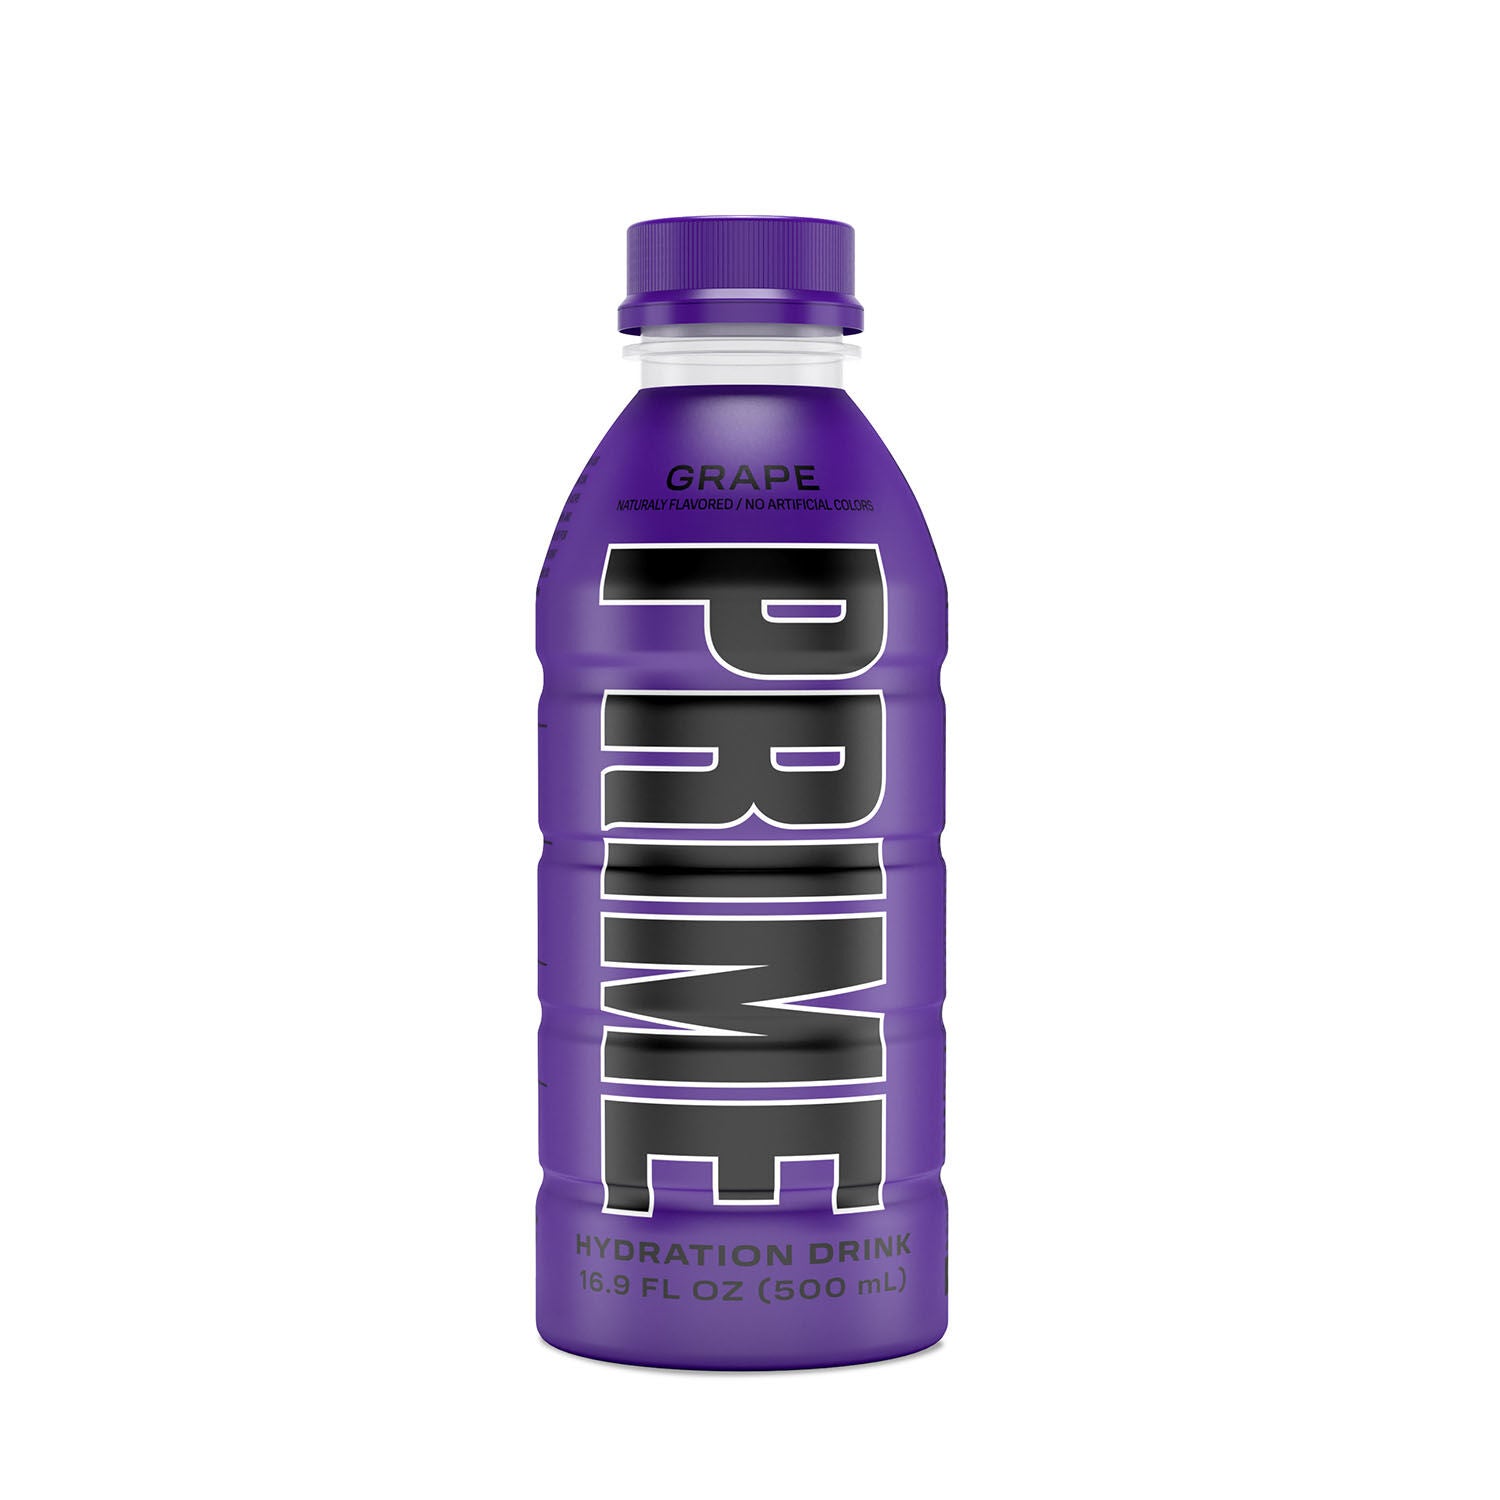 500ml bottle of Grape Prime